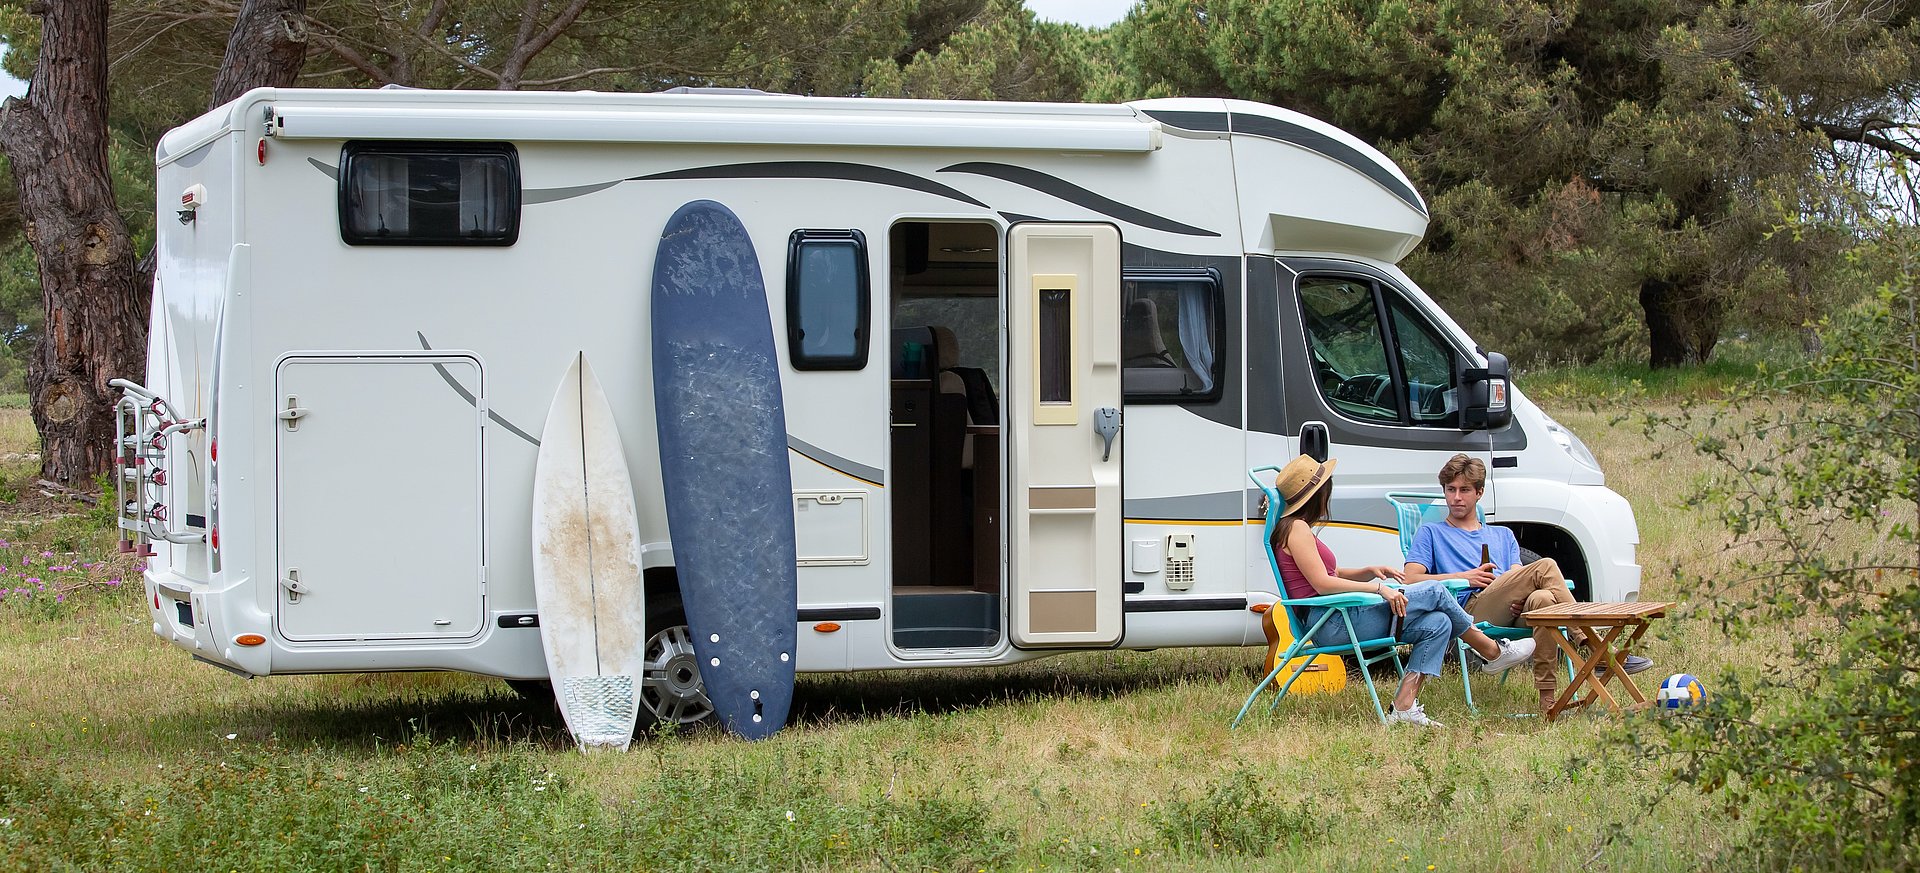 Wirklich gut ausgestattet campen - mit diesen Camping Tipps